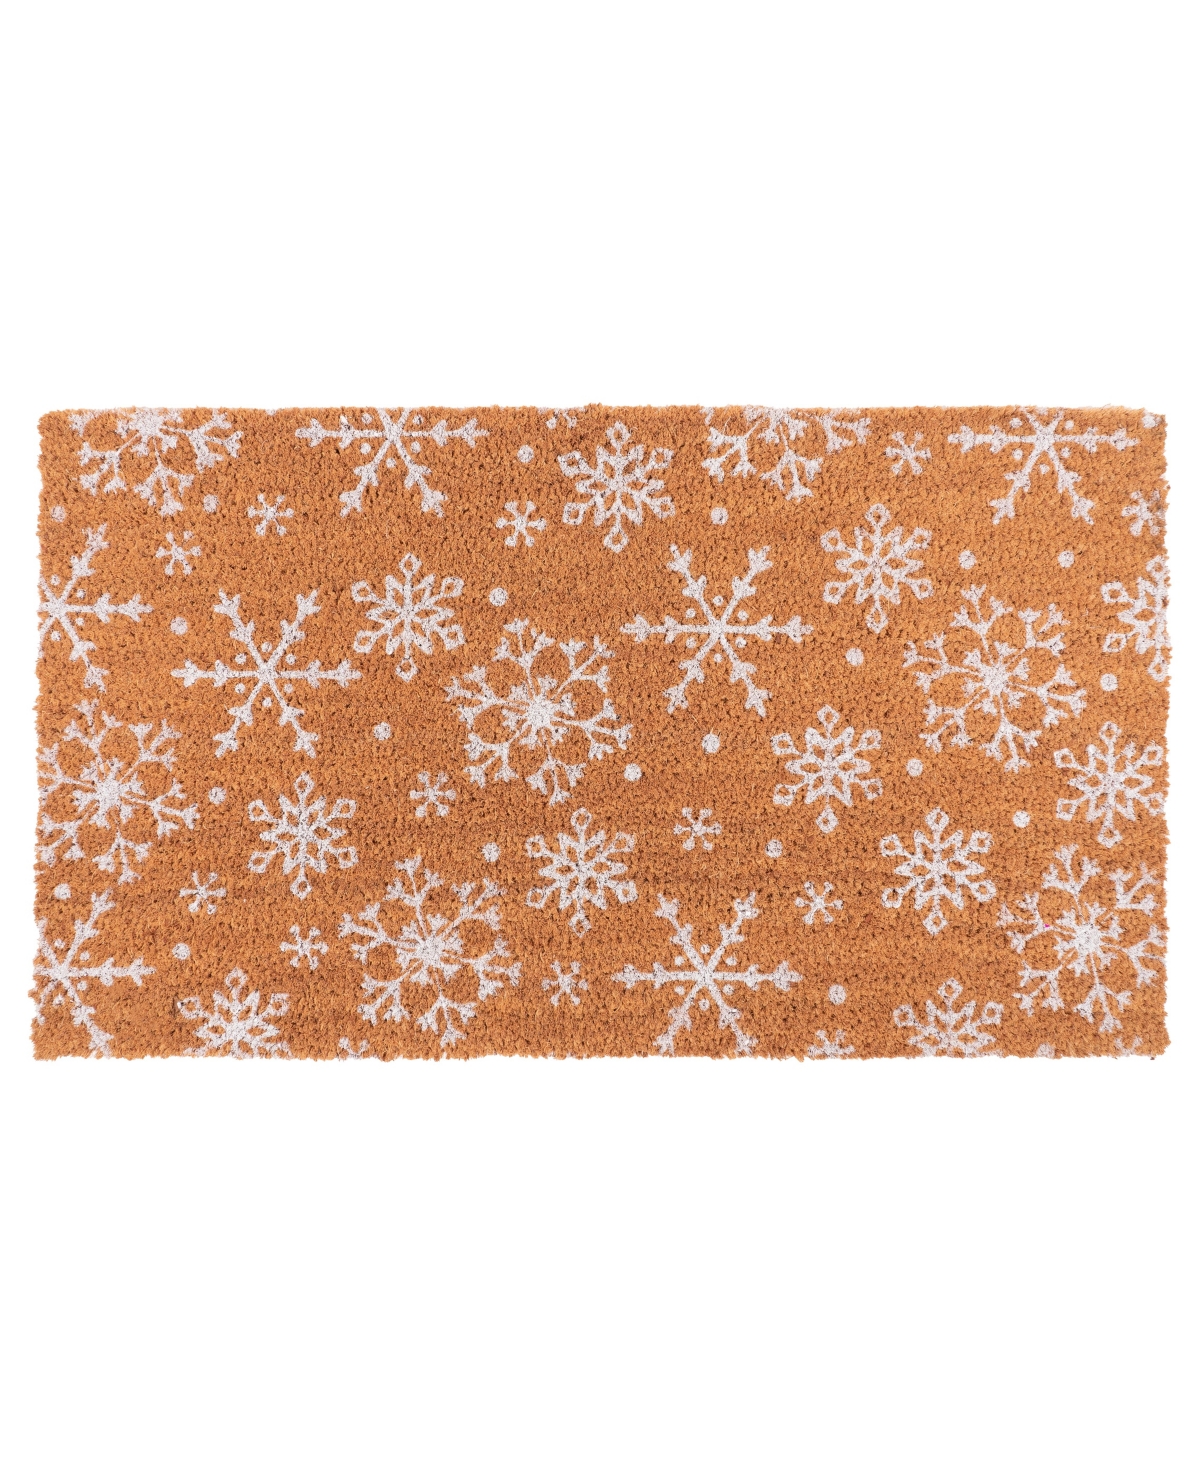 Coir Doormat, Snowflake - Beige